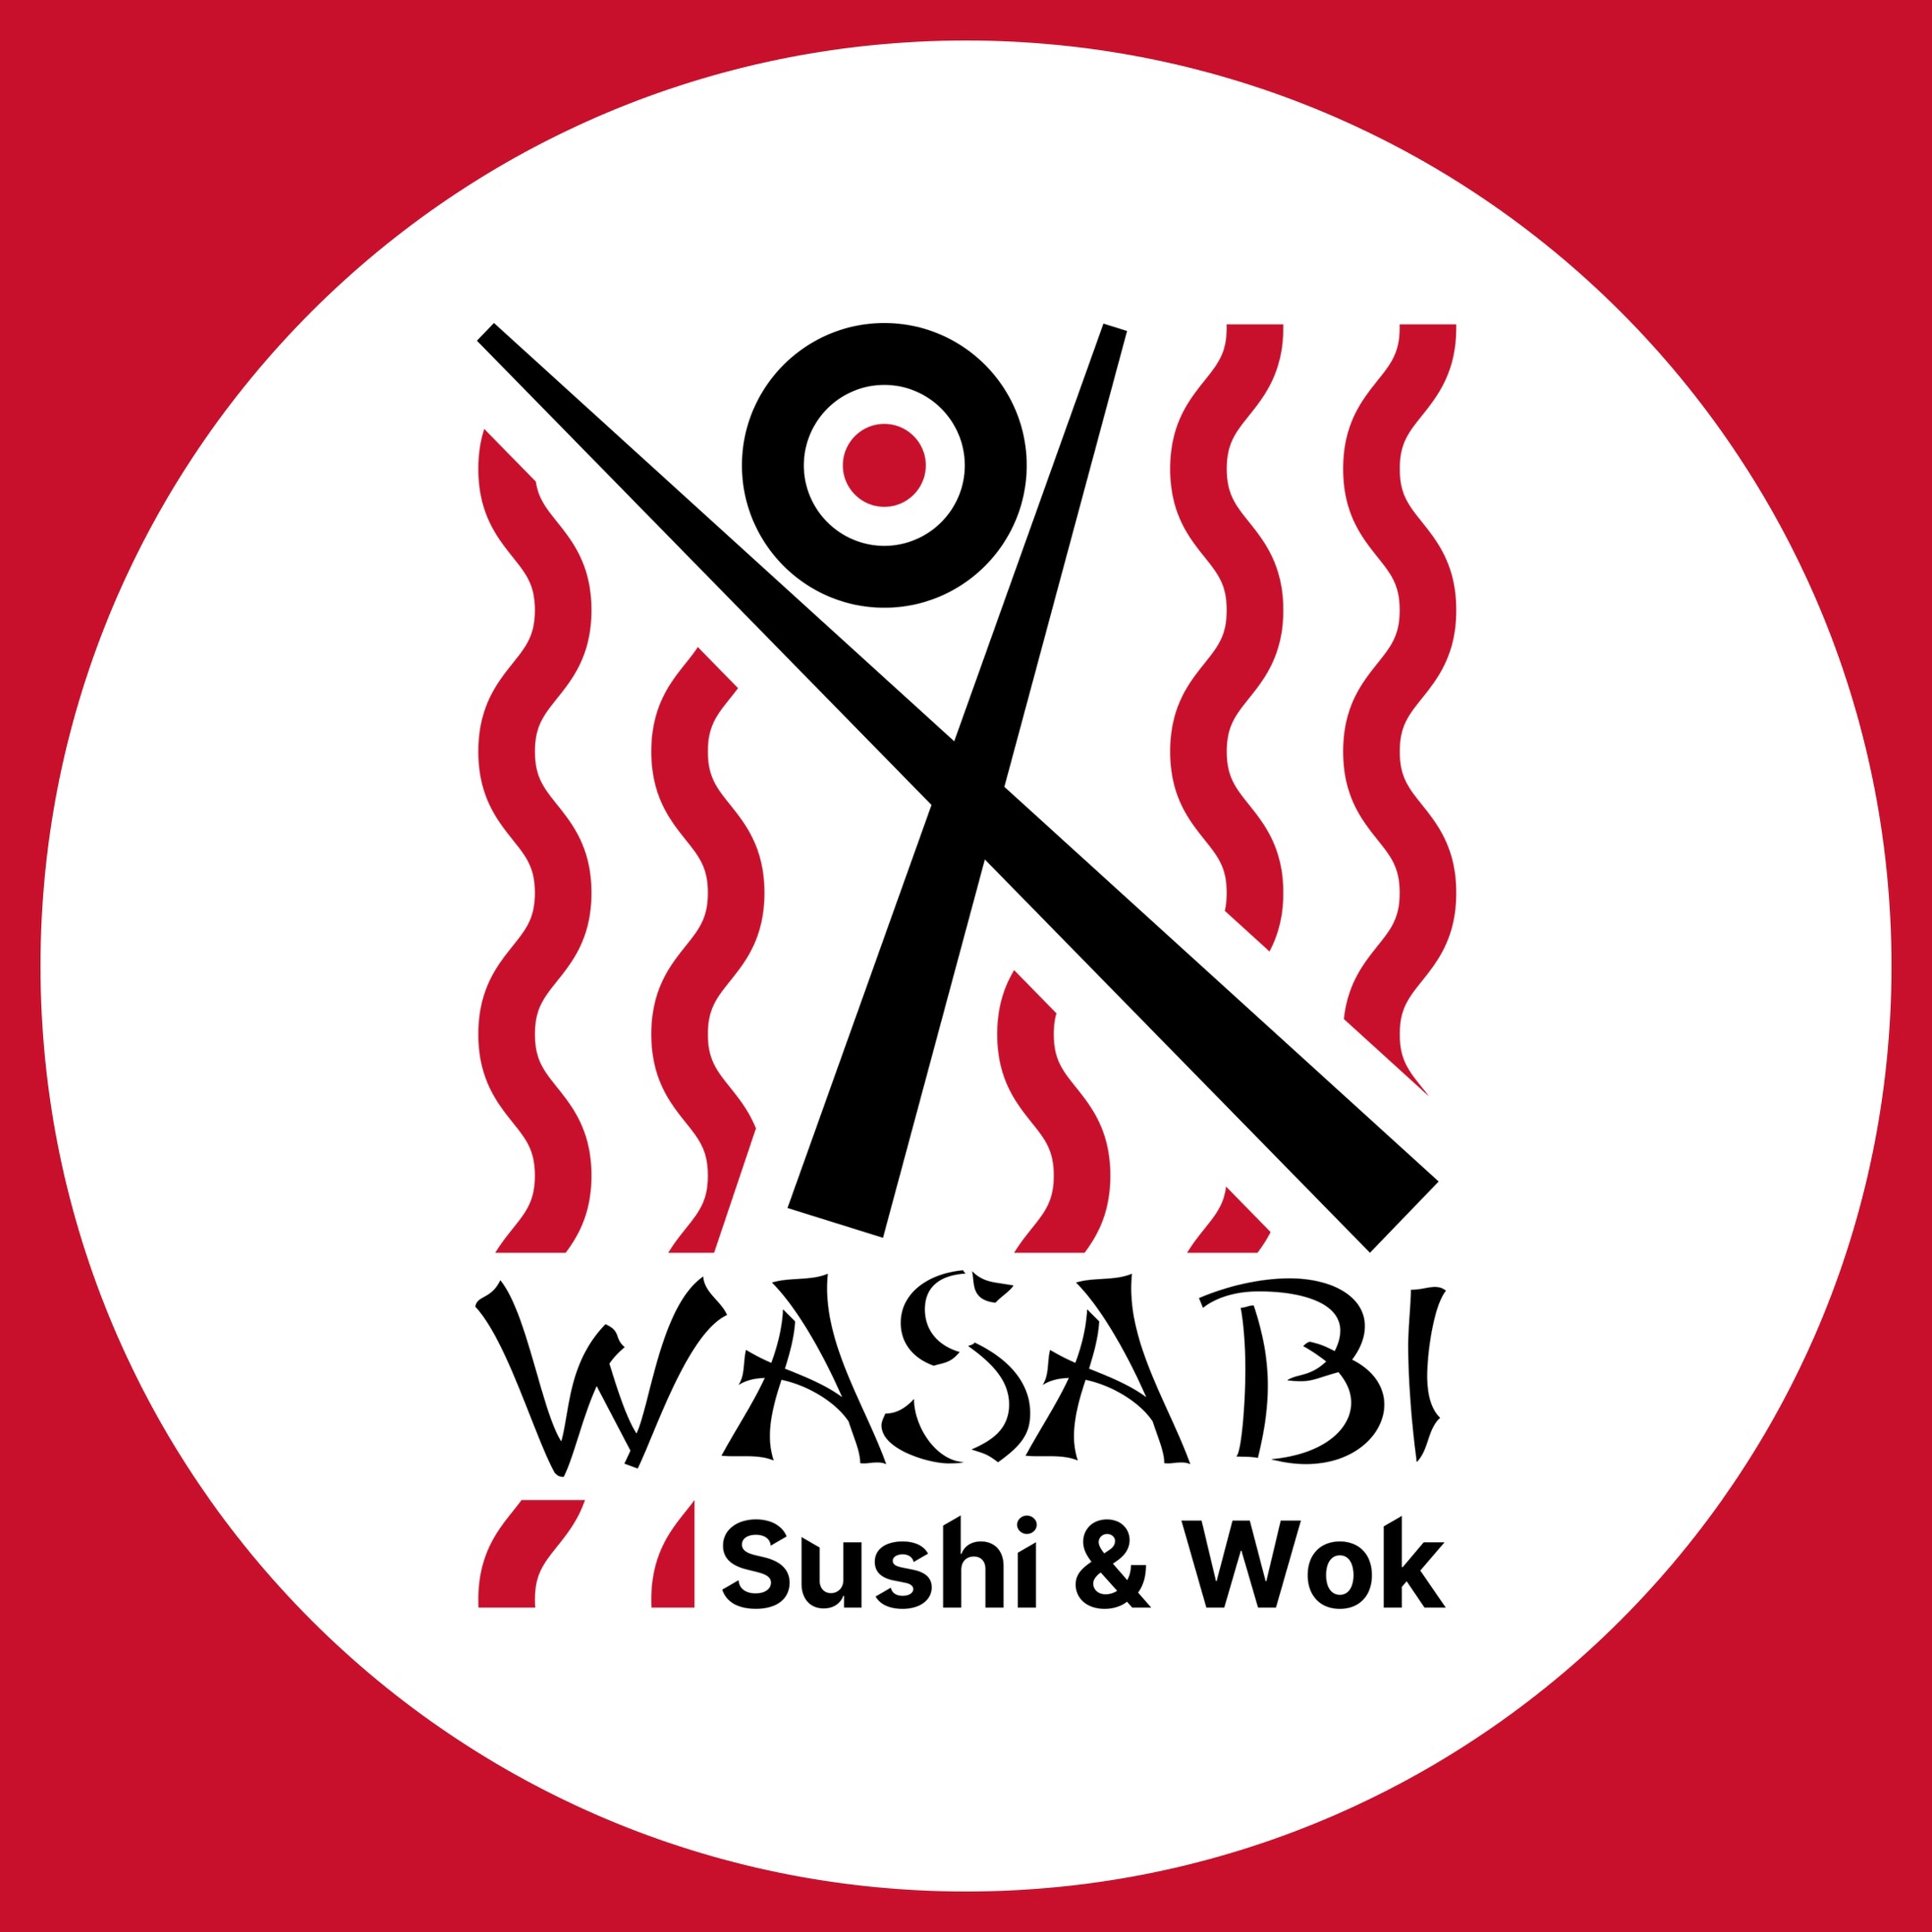 Суши wasabi отзывы фото 49